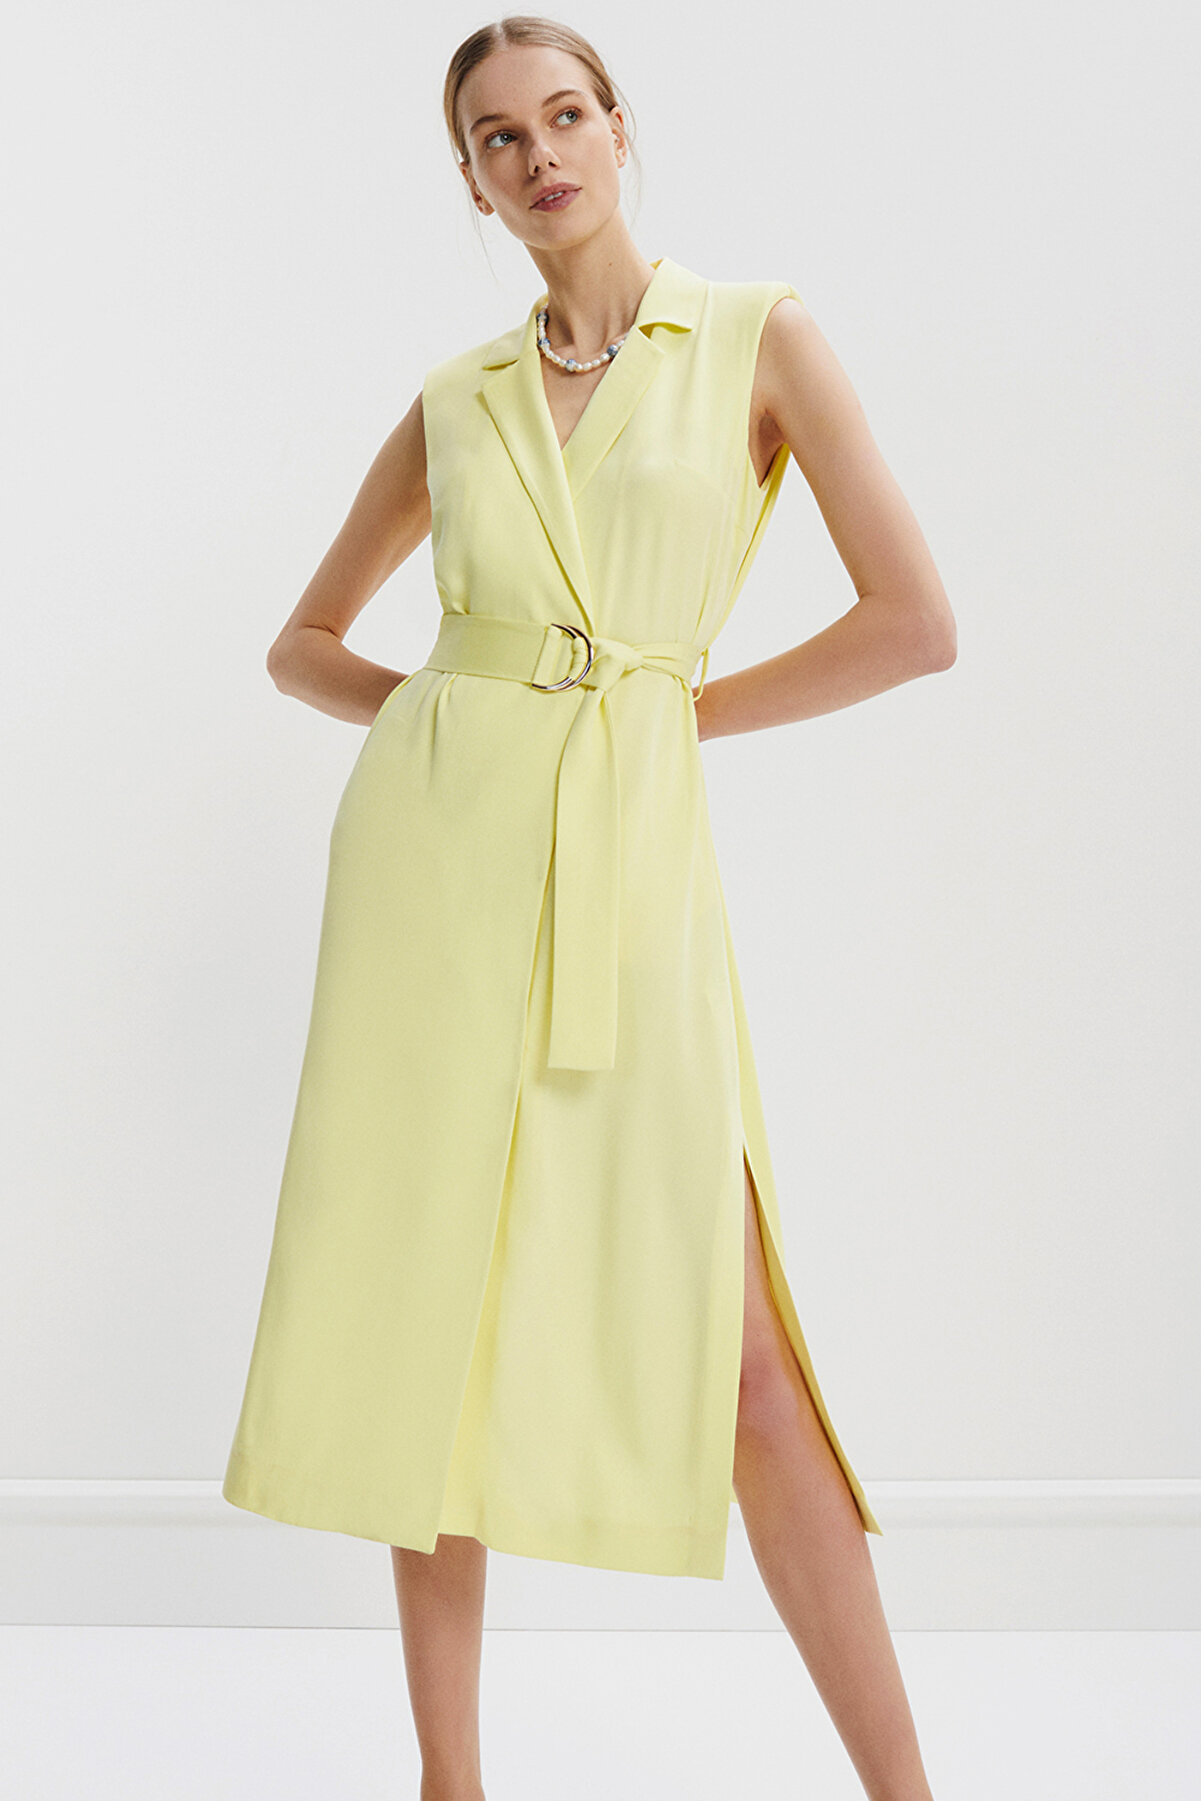 Perspective Maria Regular Fit Sıfır Kol Diz Altı Limon Renk Elbise